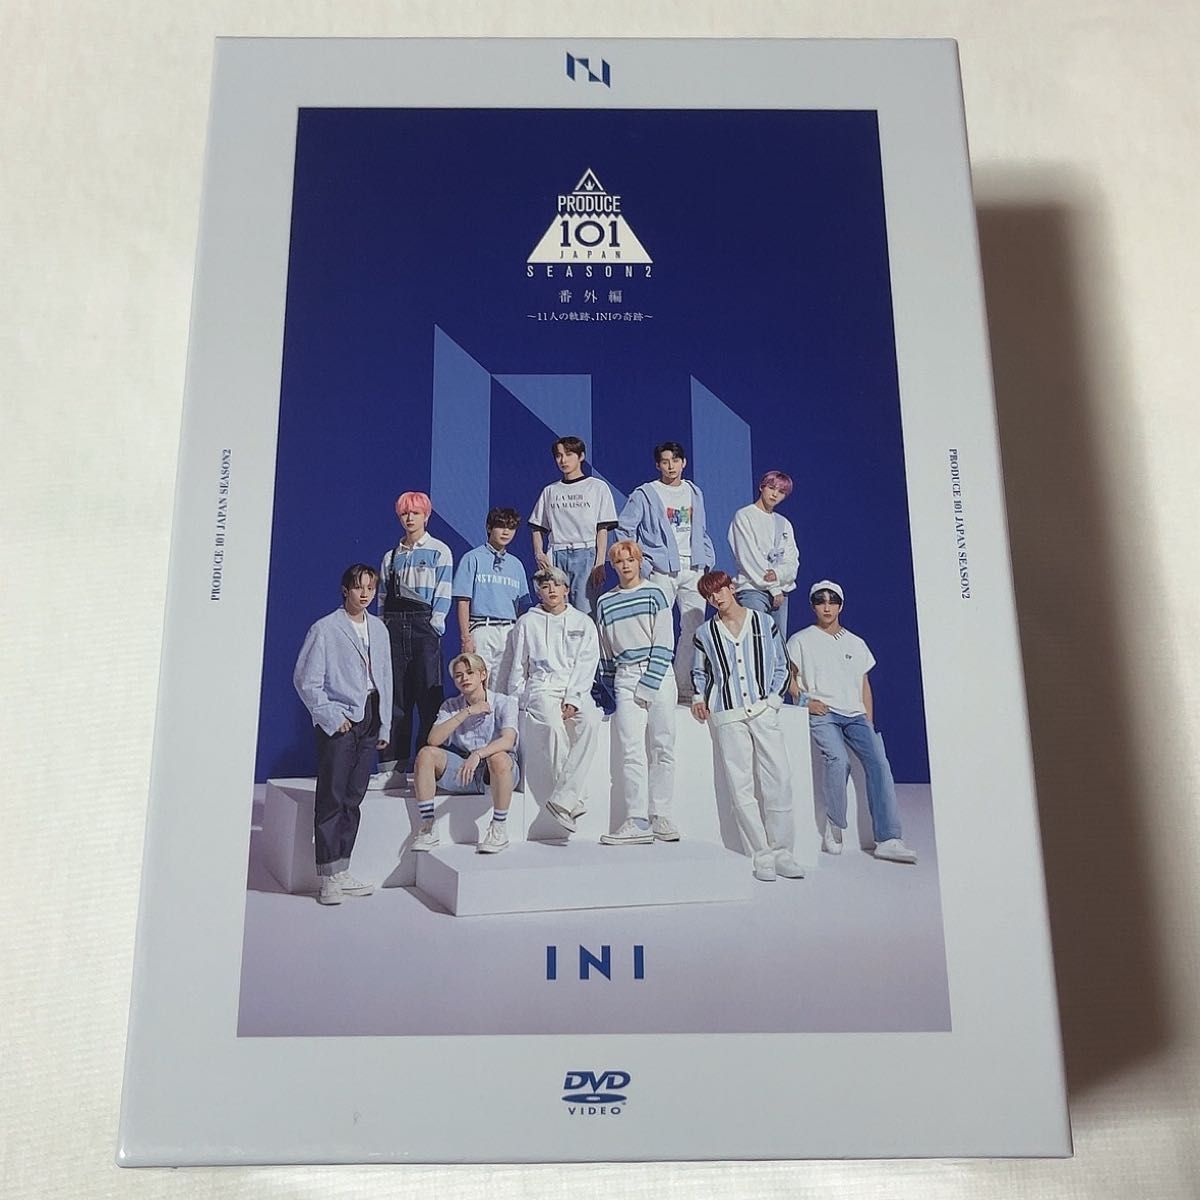 INI produce101 season2 番外編　DVD